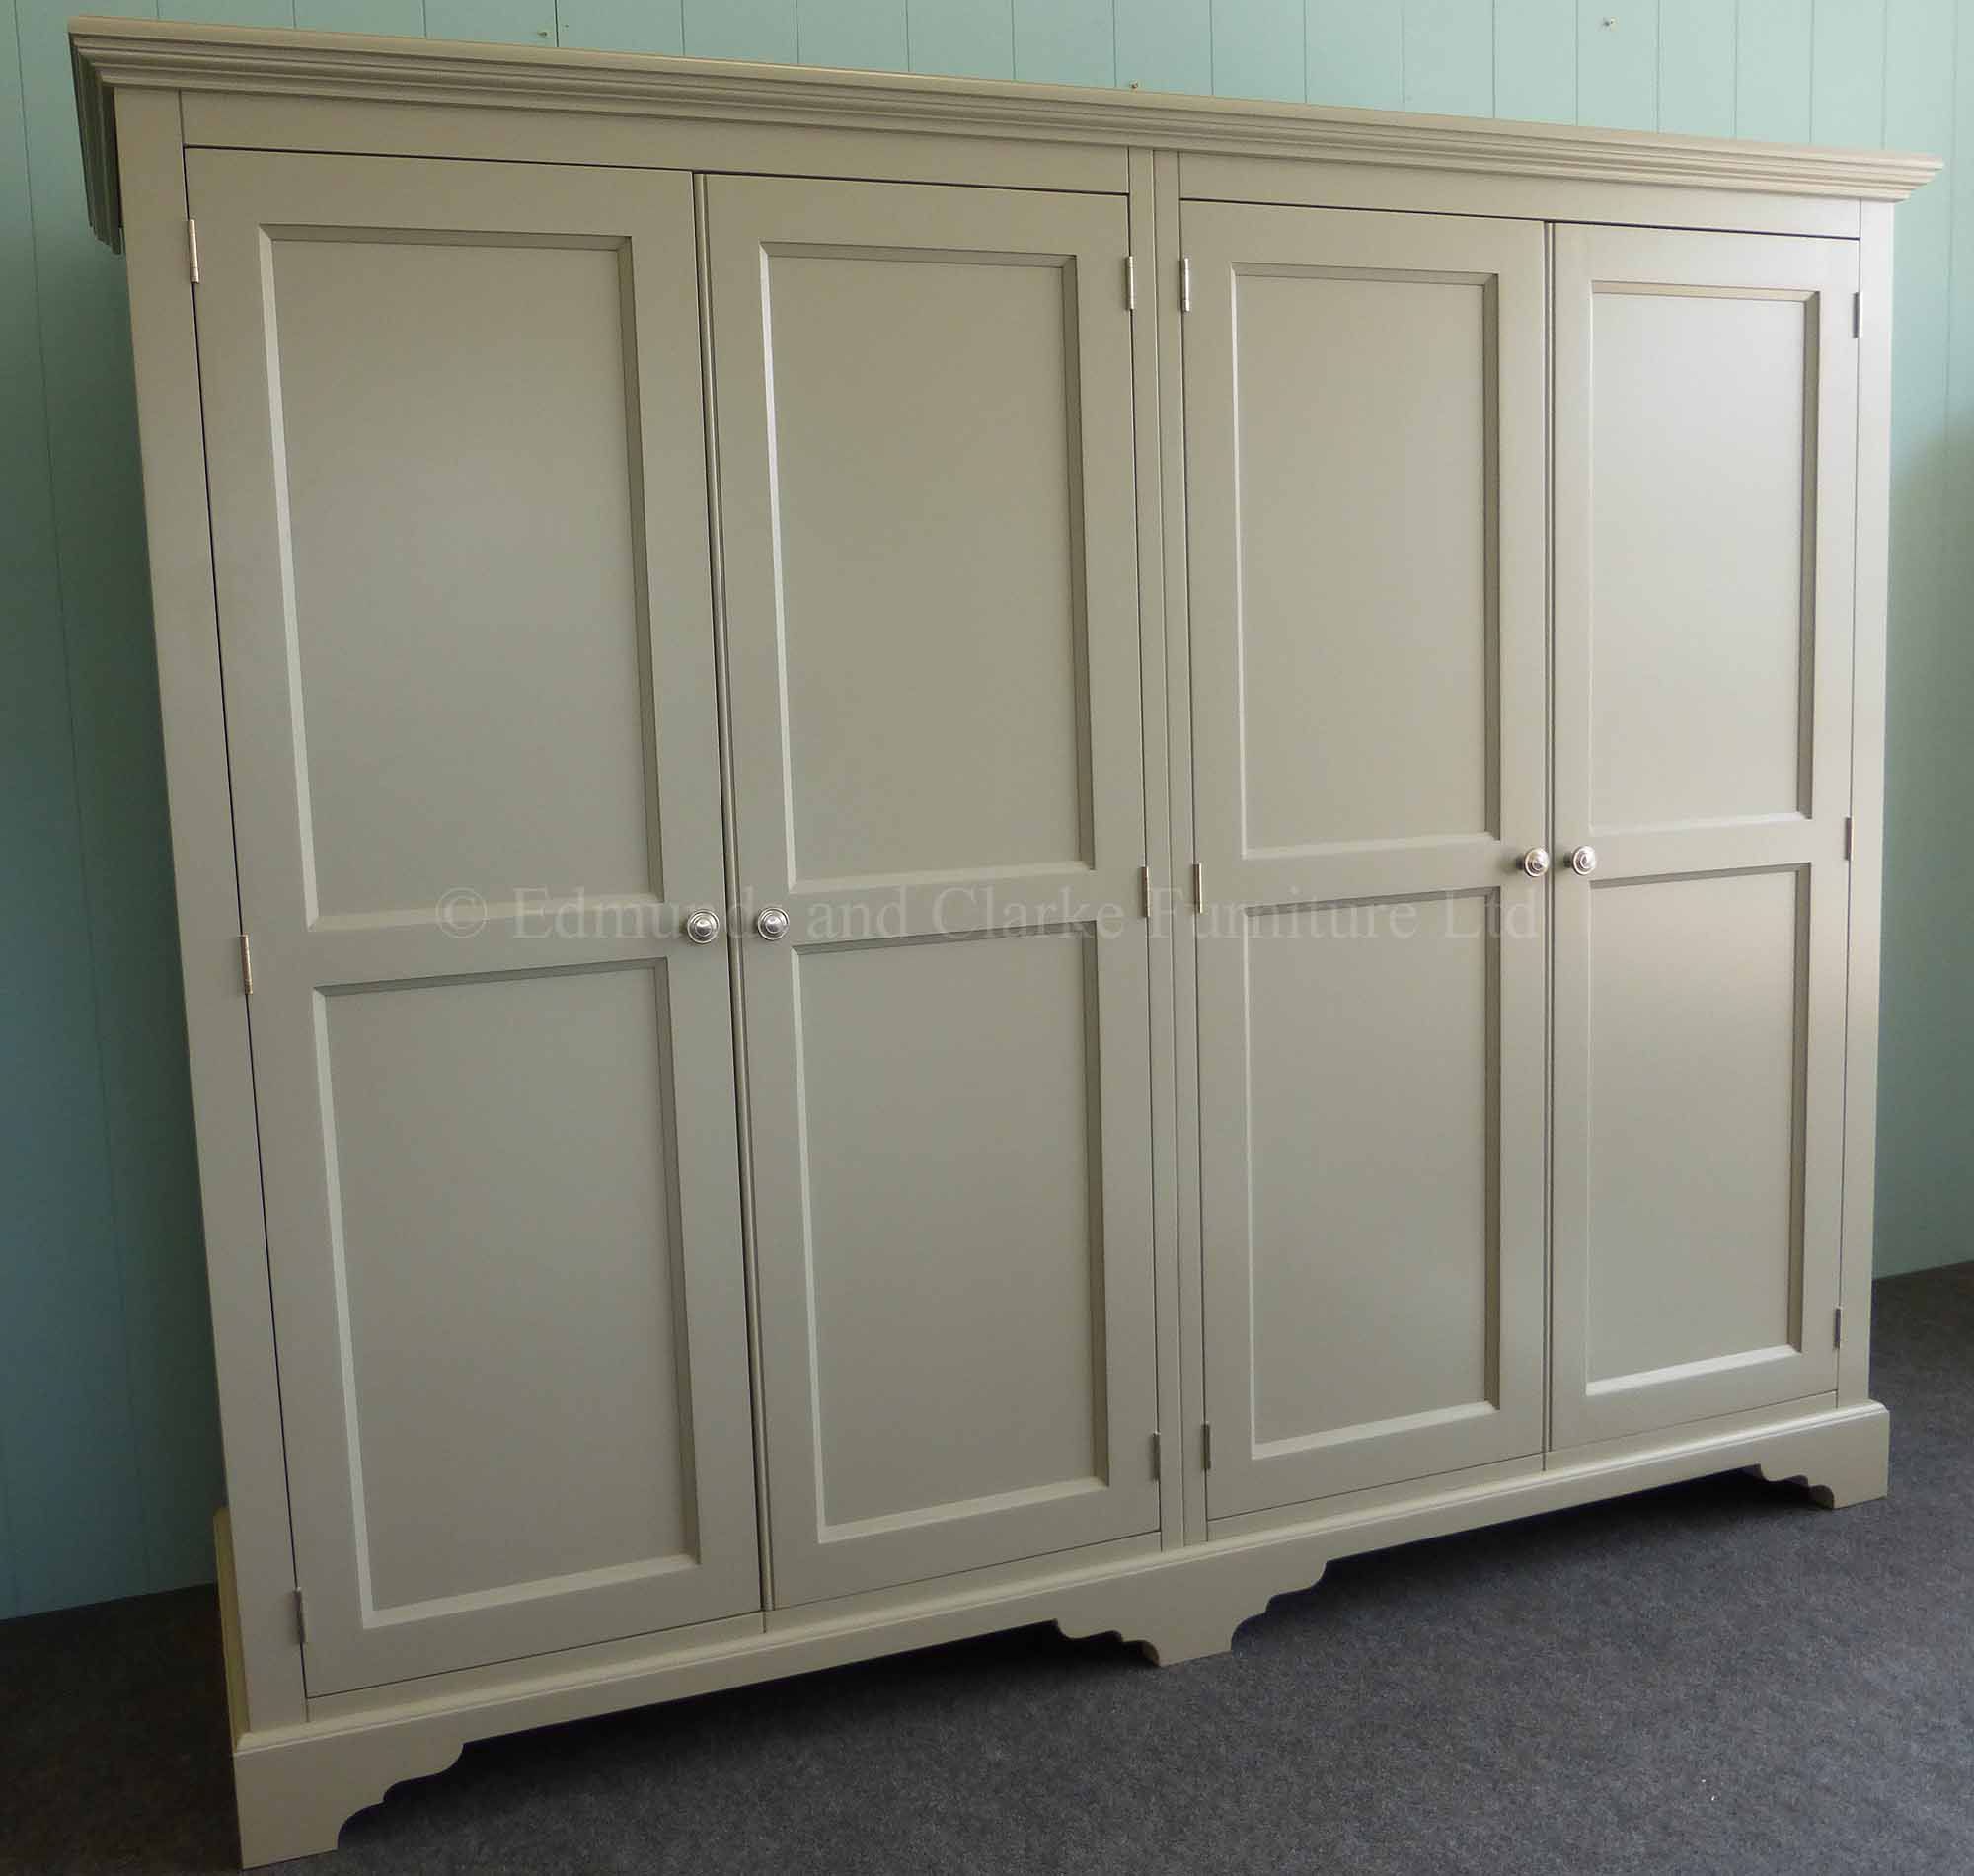 Bespoke Painted Low Eves 4 Door Wardrobe | Edmunds & Clarke Ltd Inside 4 Door Wardrobes (View 8 of 15)